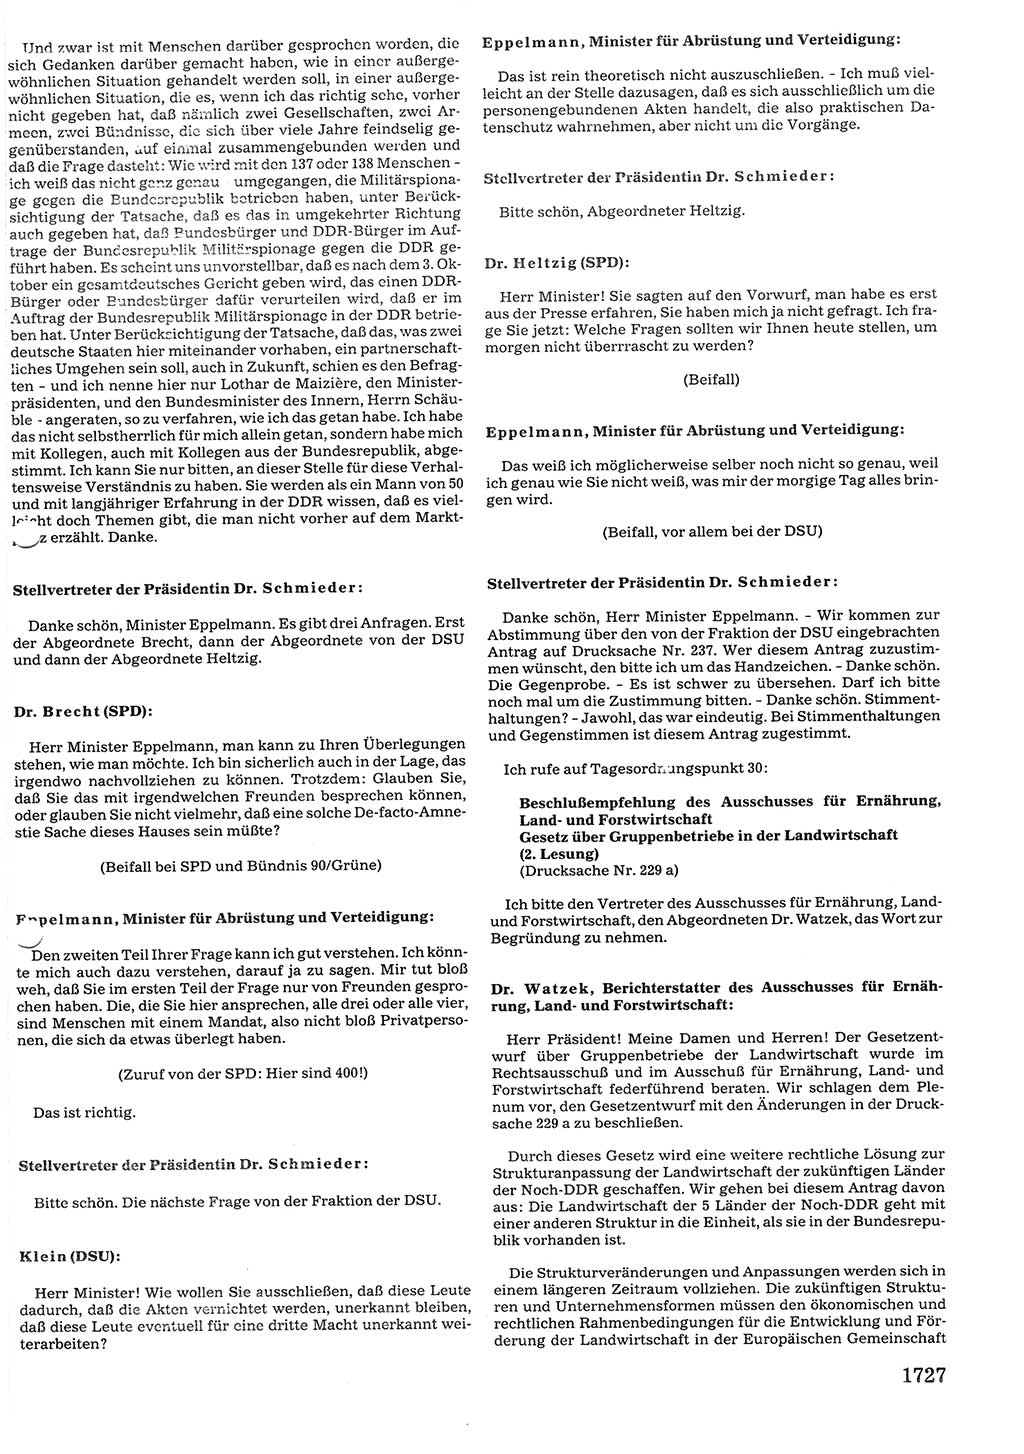 Tagungen der Volkskammer (VK) der Deutschen Demokratischen Republik (DDR), 10. Wahlperiode 1990, Seite 1727 (VK. DDR 10. WP. 1990, Prot. Tg. 1-38, 5.4.-2.10.1990, S. 1727)